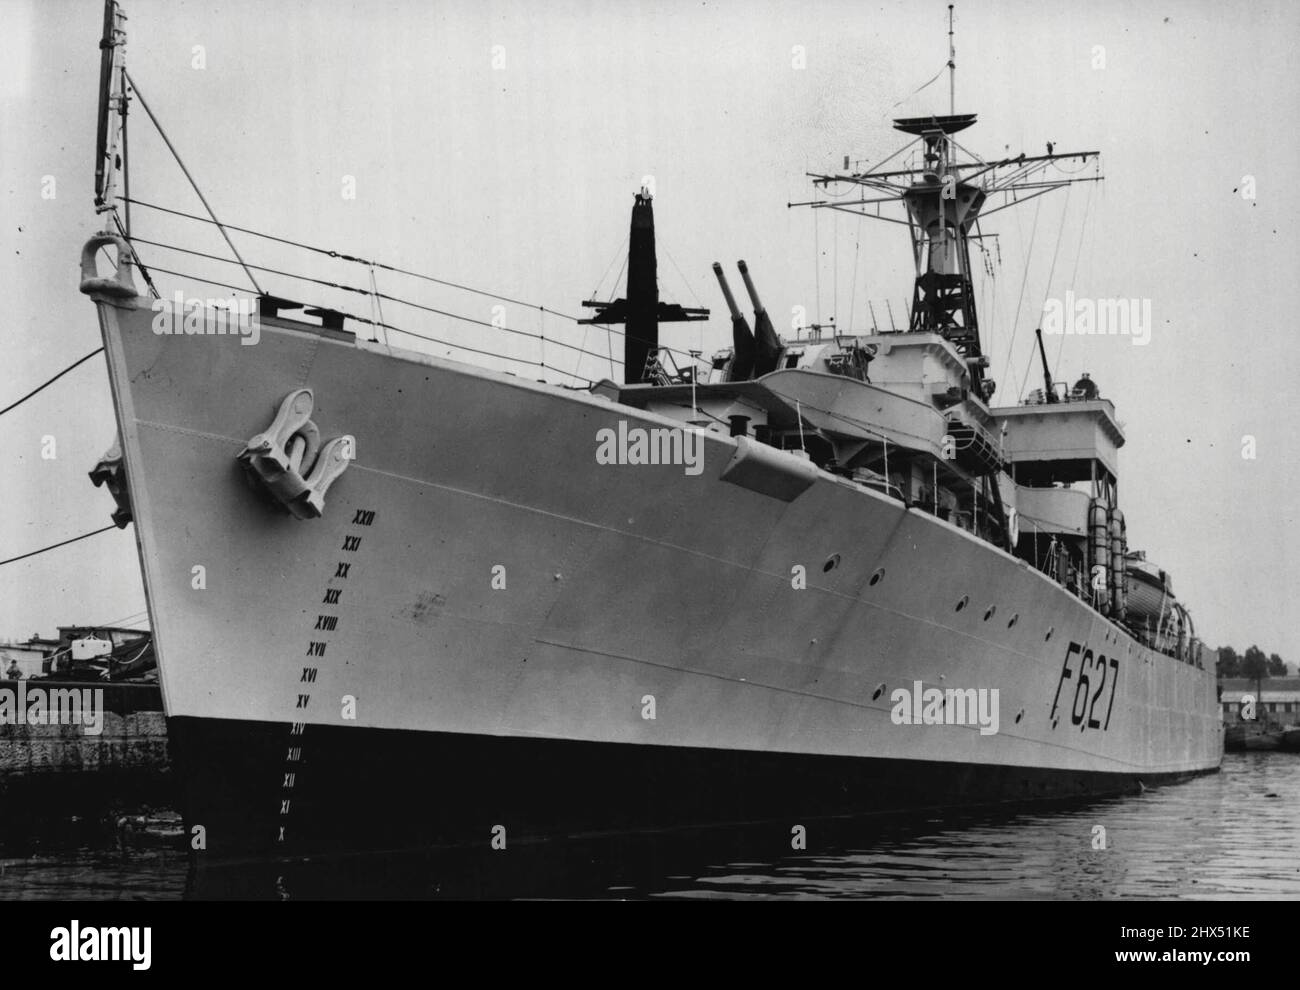 Nouvelle frégate pour l'extrême-Orient -- H.M.S. Mount Bay photographié à Chatham à ce jour (lundi) la veille de son départ pour l'extrême-Orient. H.S. Mount Bay, une frégate de 307 pieds qui a été achevée en avril de cette année, naviguera de Chatham demain sur la première étape de son voyage en extrême-Orient pour aider à renforcer les forces navales. Elle est commandée par le capitaine J.H. Unwin, D.S.C., du Hampshire. 16 mai 1949. (Photo de Reuterphoto). Banque D'Images